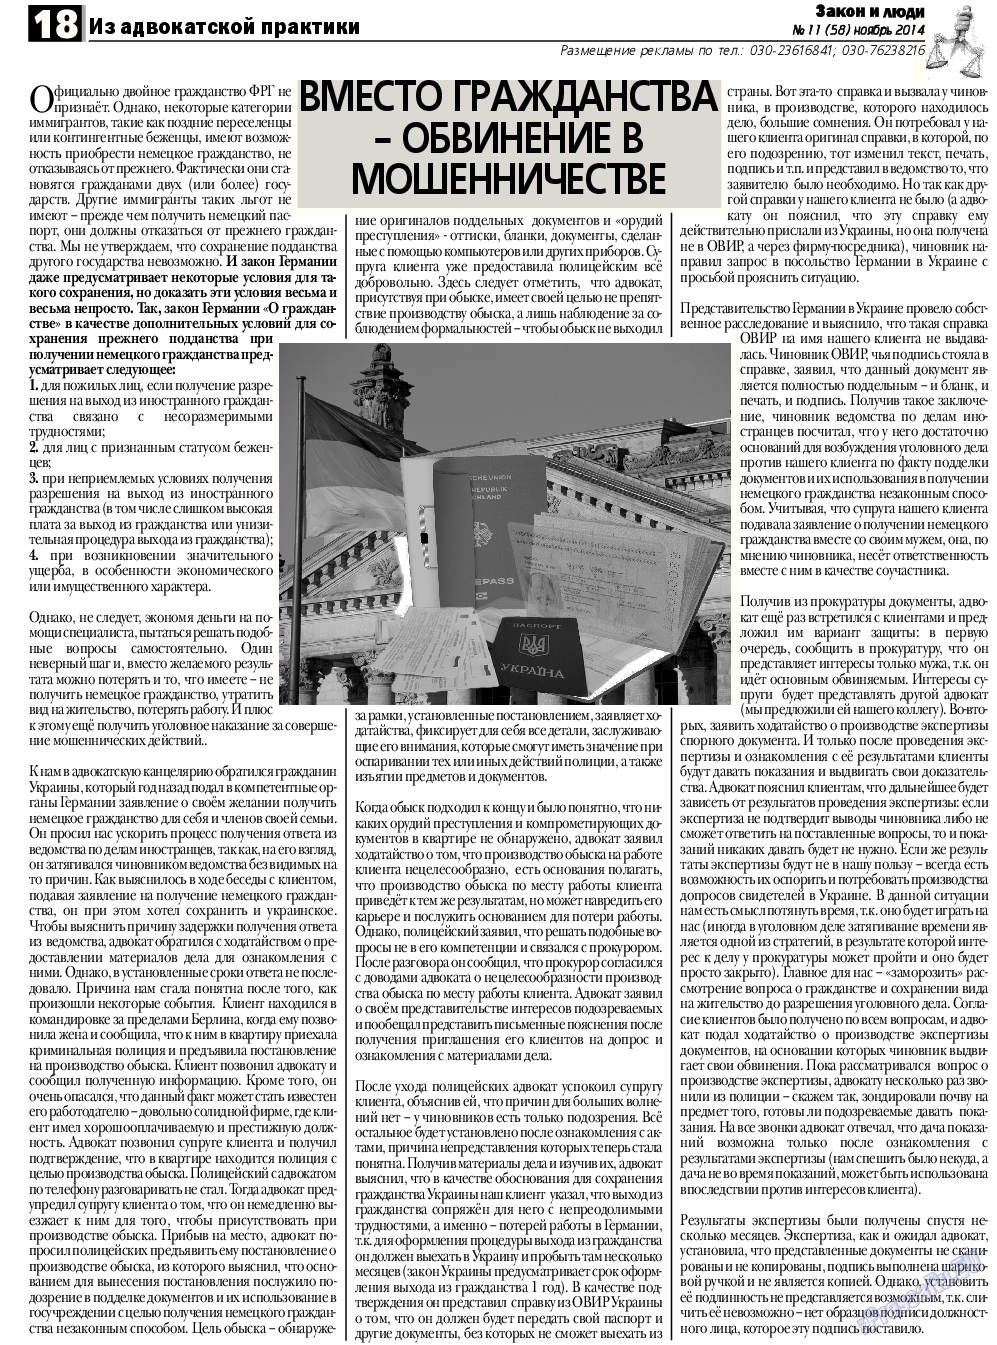 Закон и люди, газета. 2014 №11 стр.18